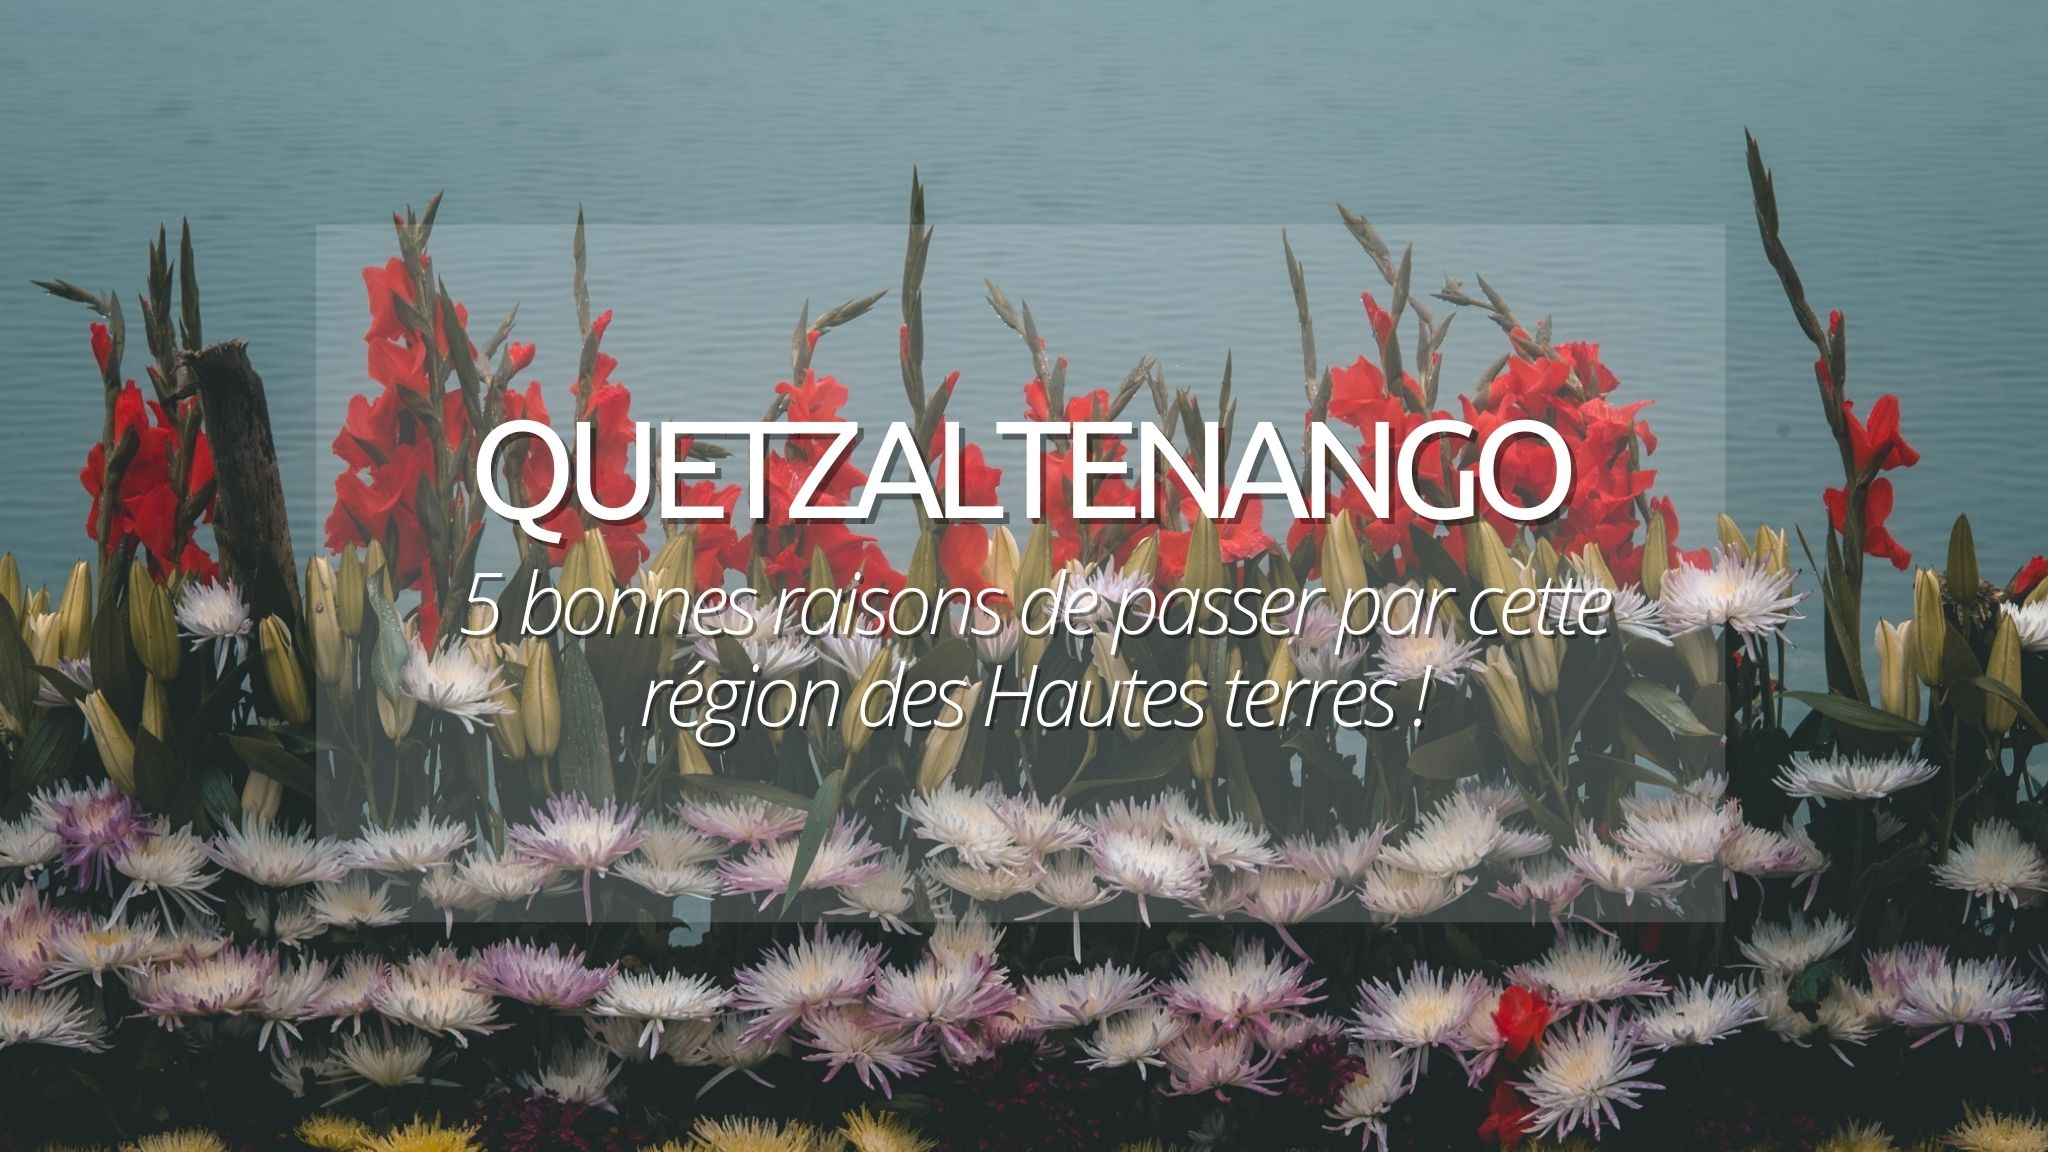 5 bonnes raisons de visiter Quetzaltenango (Xela) lors d’un voyage au Guatemala